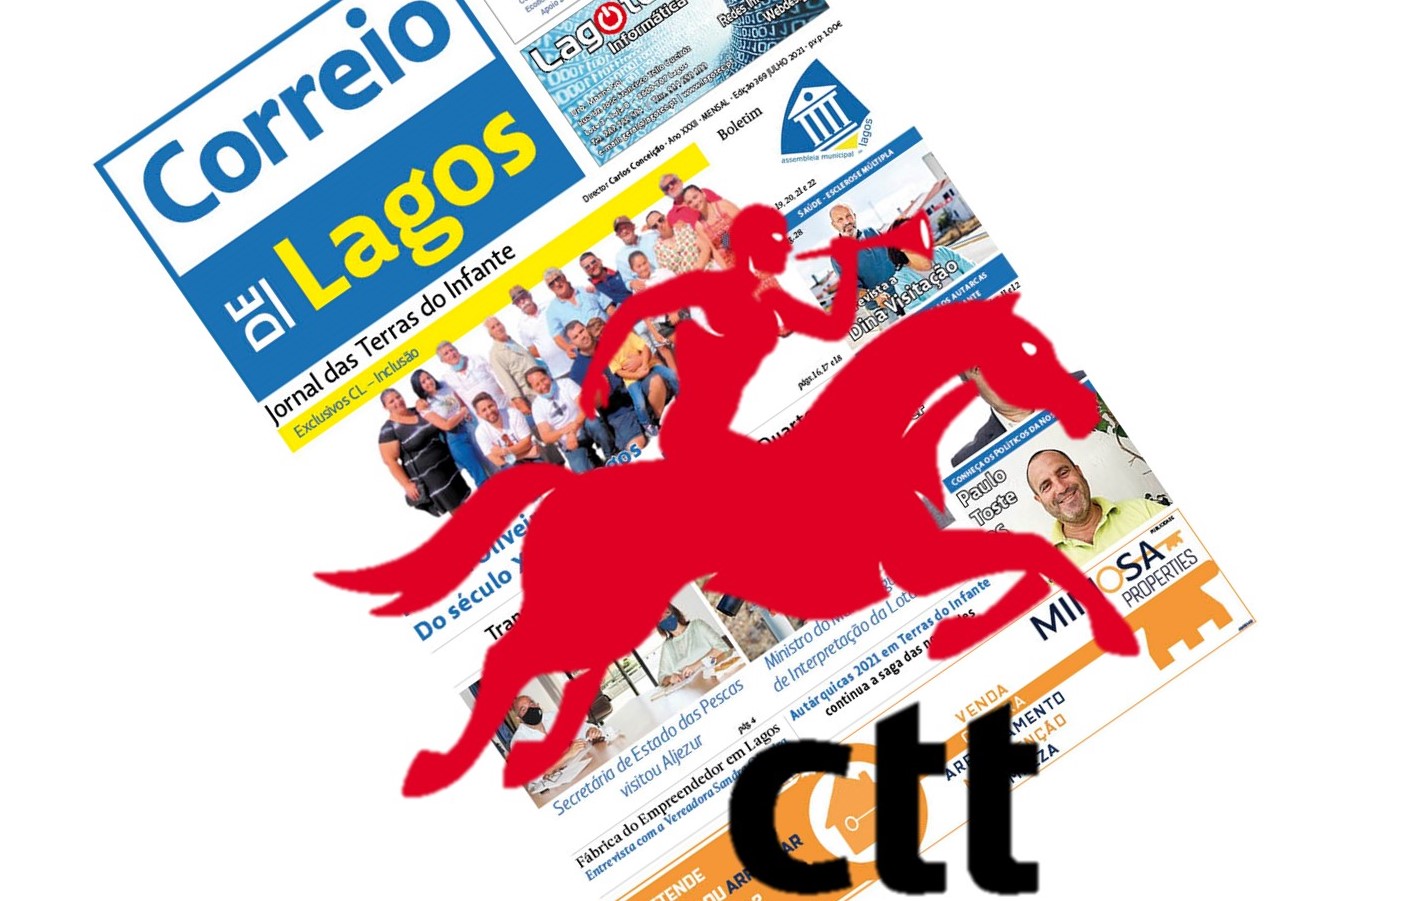 CTT de Lagos continua a falhar na distribuição do jornal impresso Correio de Lagos